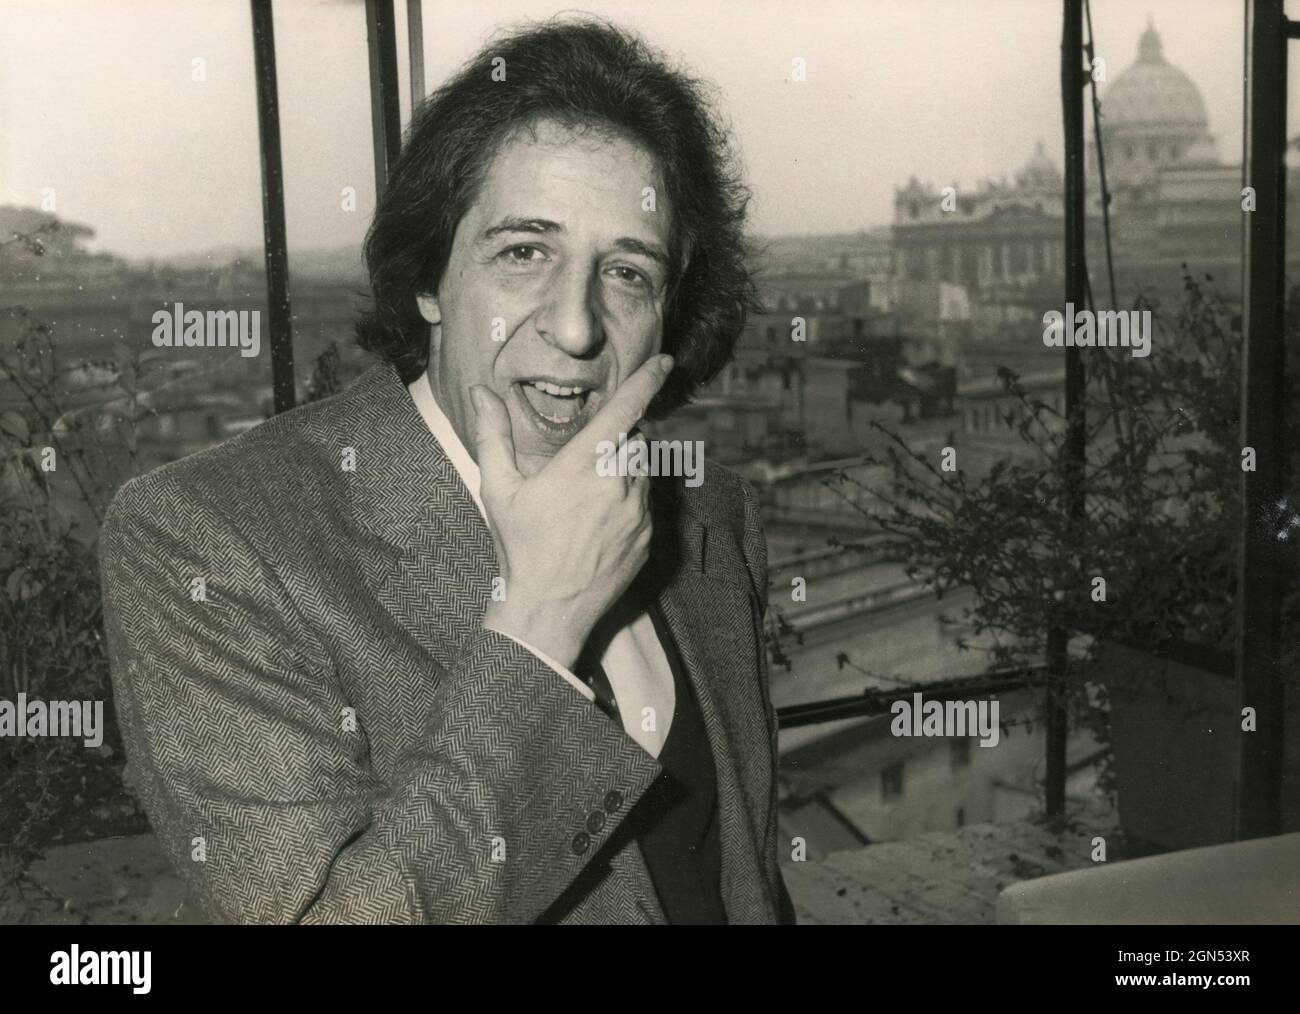 Cantante y escritor italiano Giorgio Gaber, 1970s Foto de stock